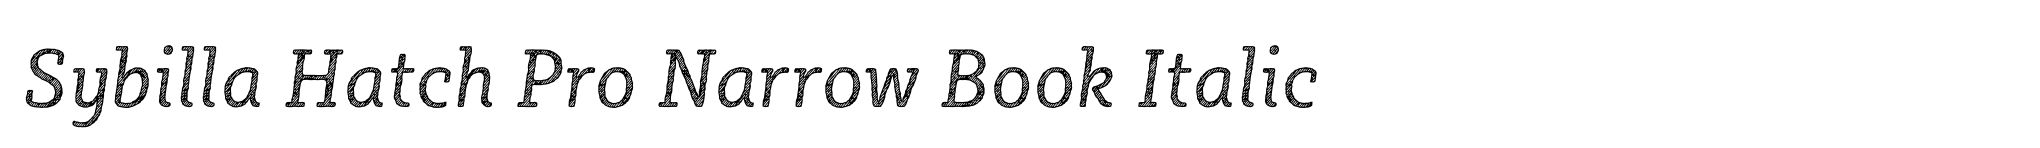 Sybilla Hatch Pro Narrow Book Italic image